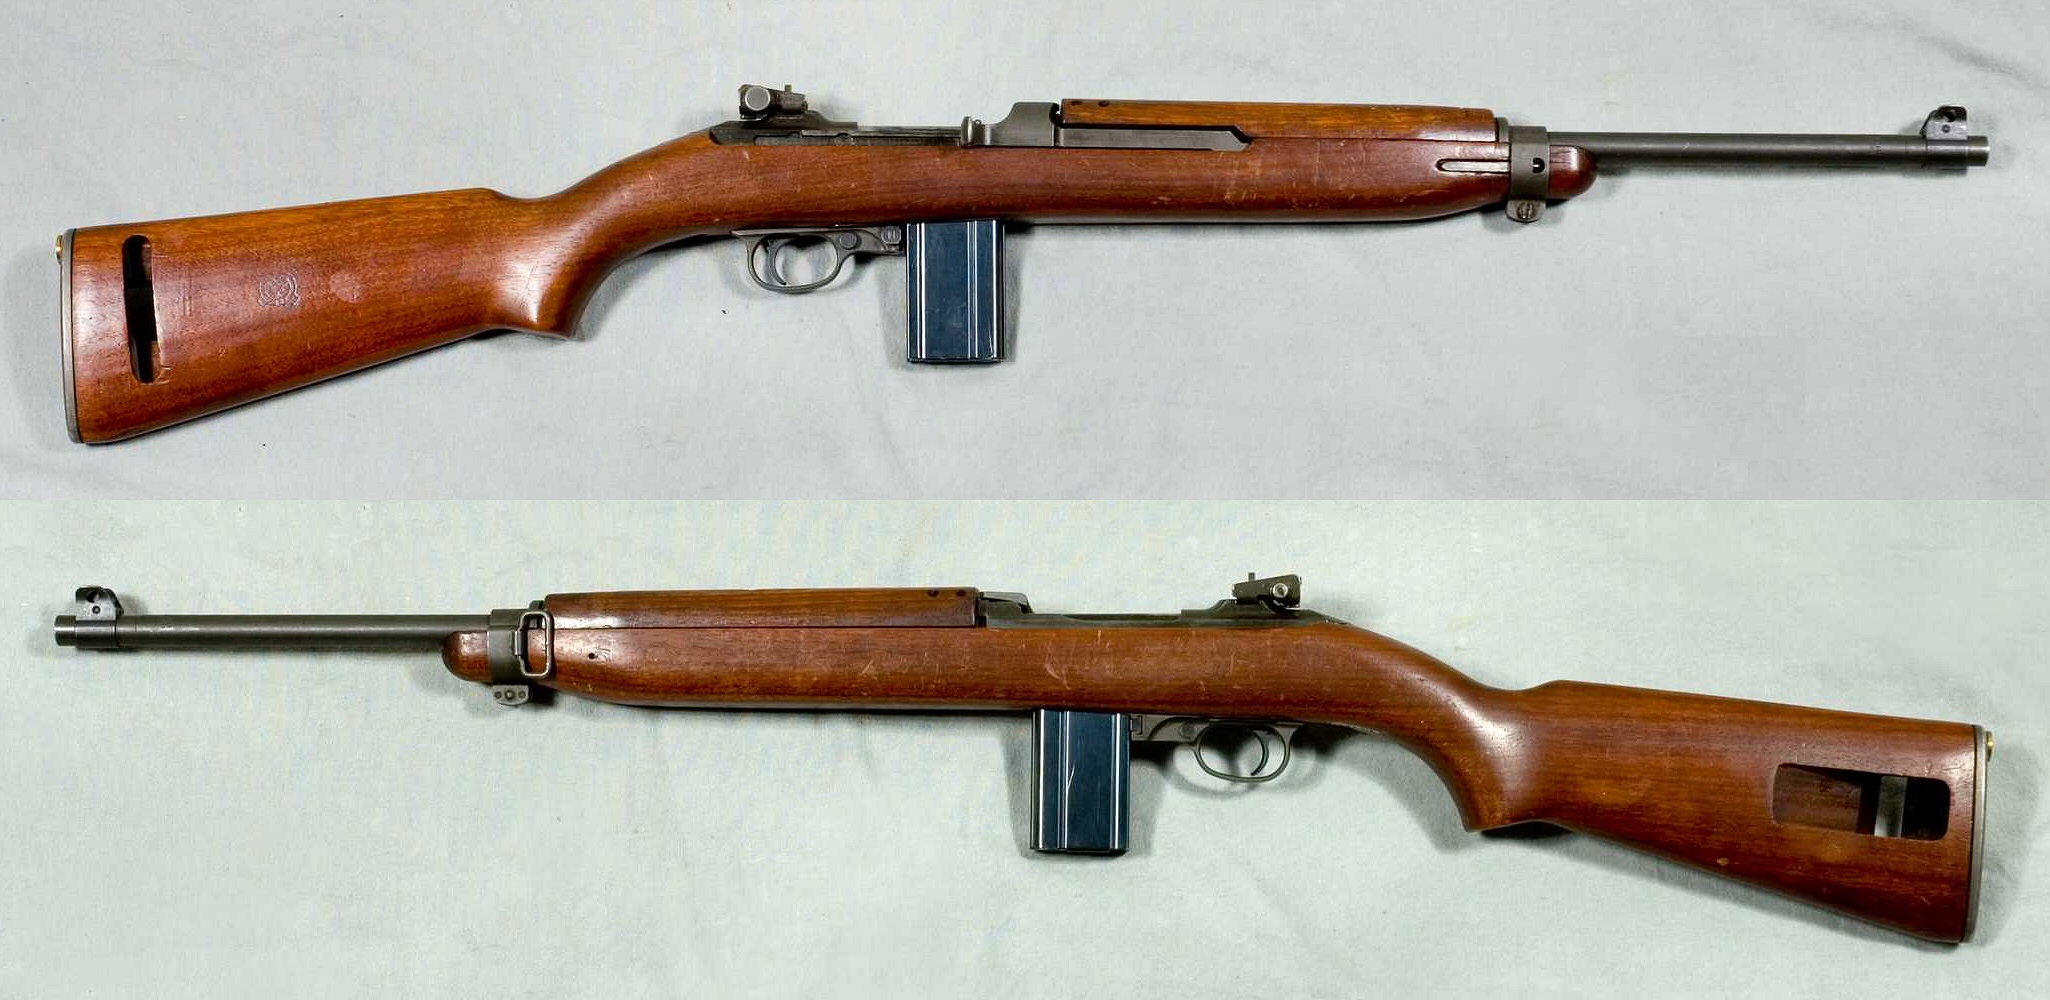 M1_Carbine_Mk_I_-_USA_-_Arm%C3%A9museum.jpg